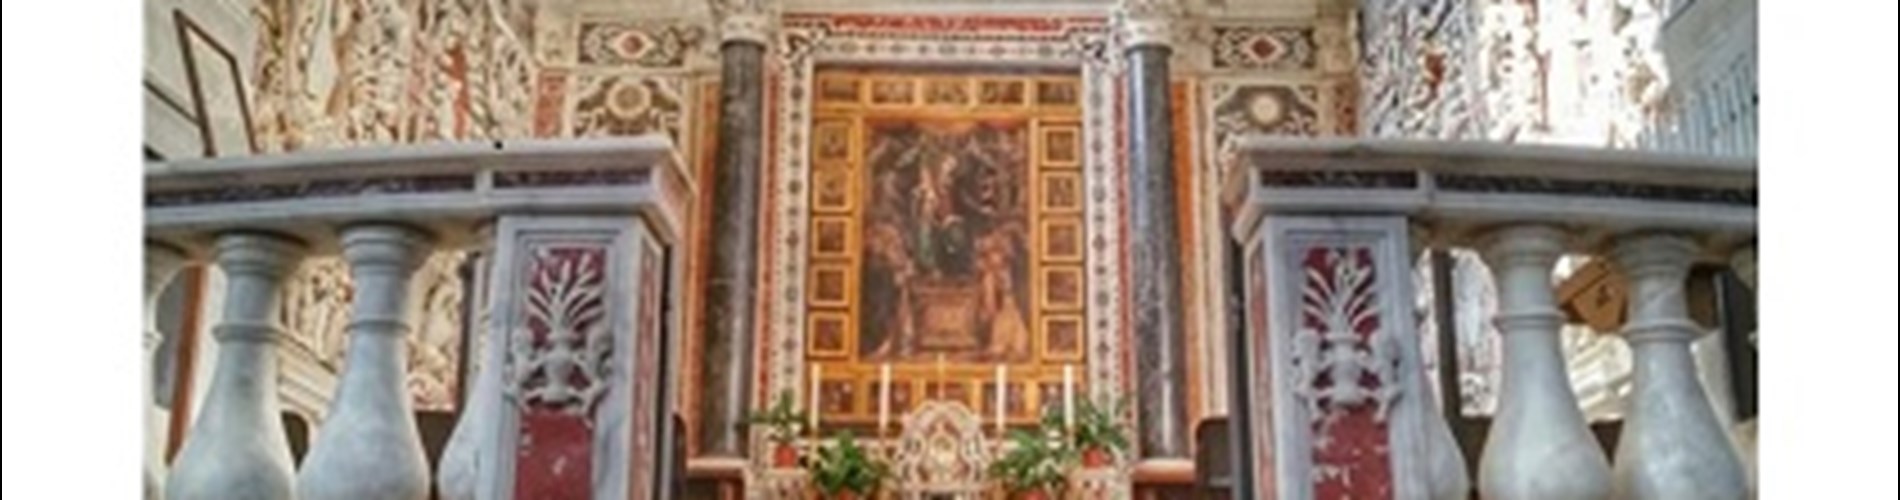 La Cappella del Rosario